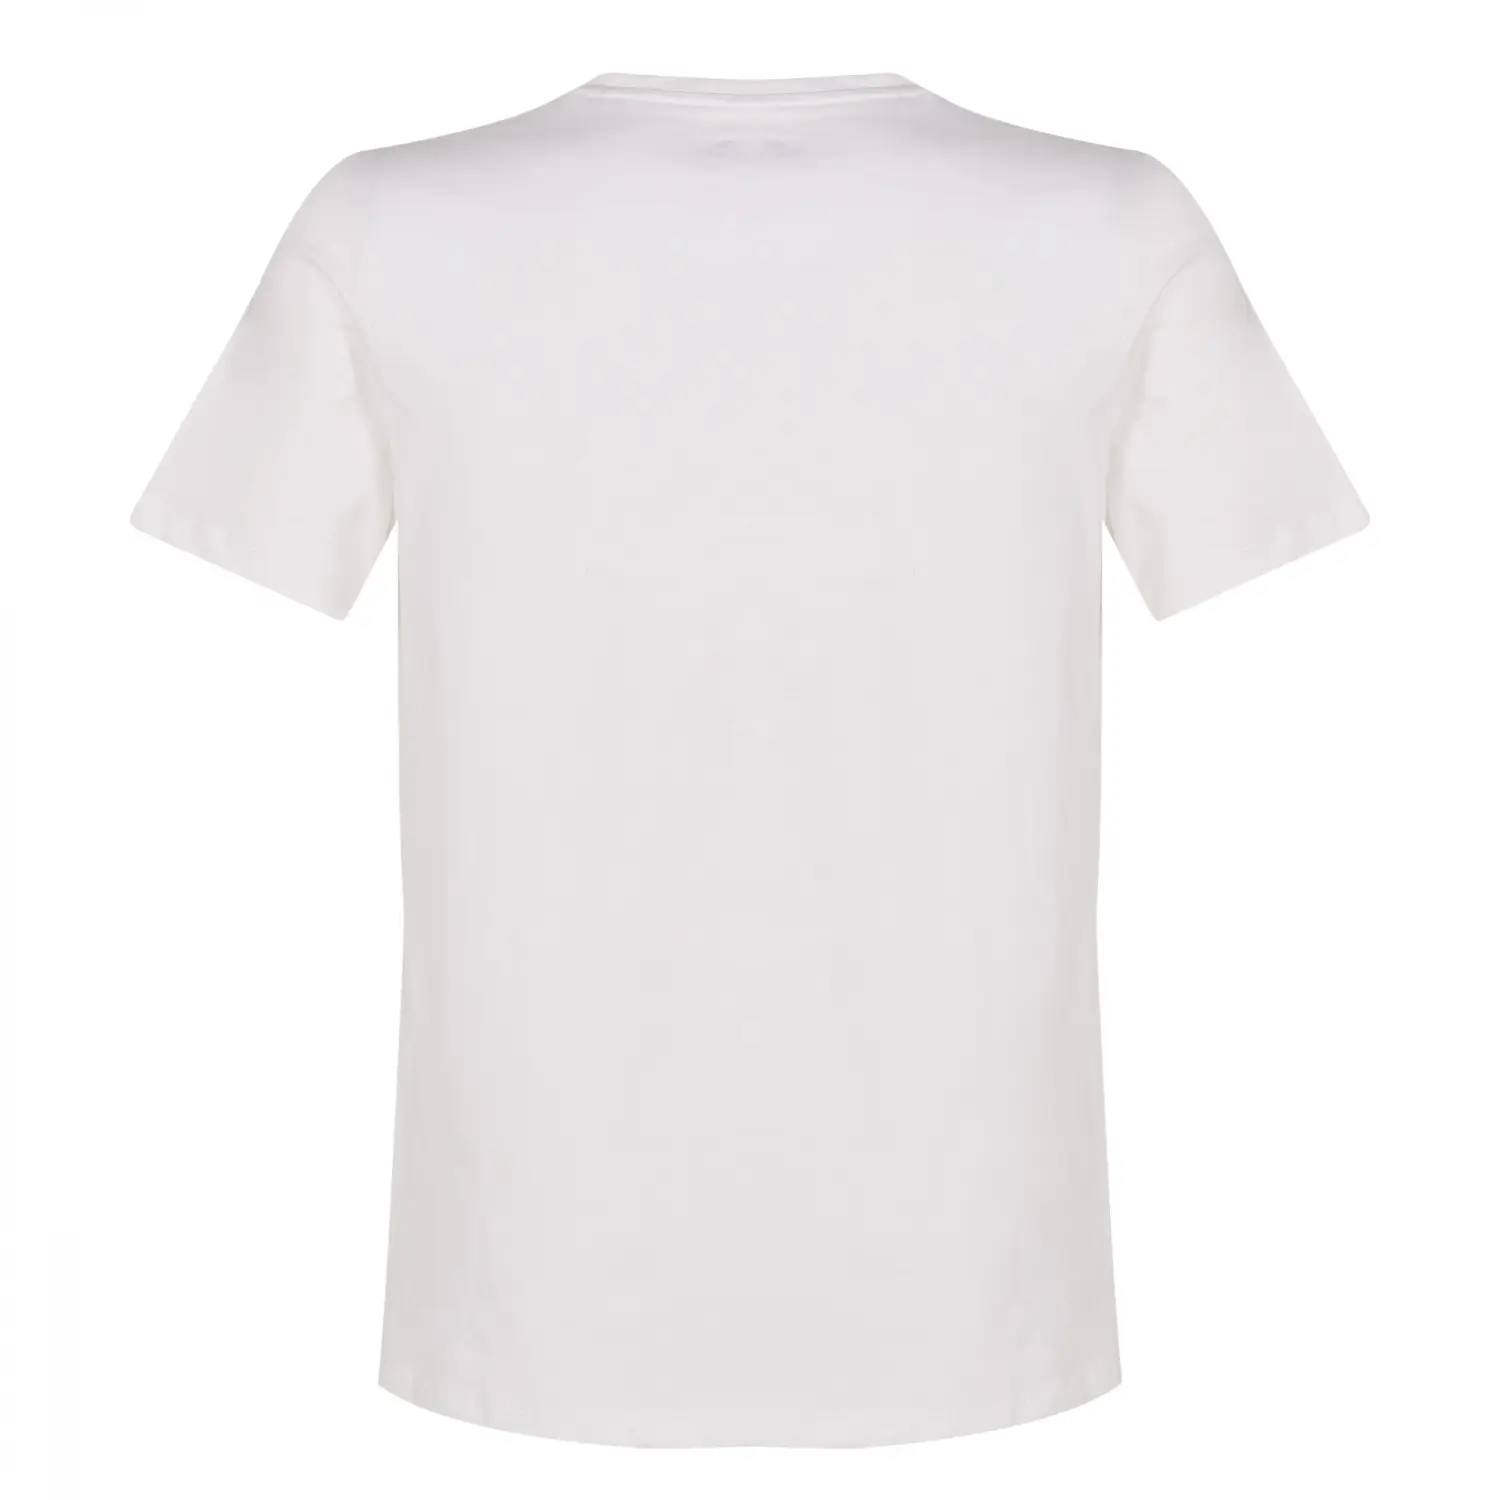 New Balance Lifestyle Beyaz Erkek Tişört - MNT1207-WT